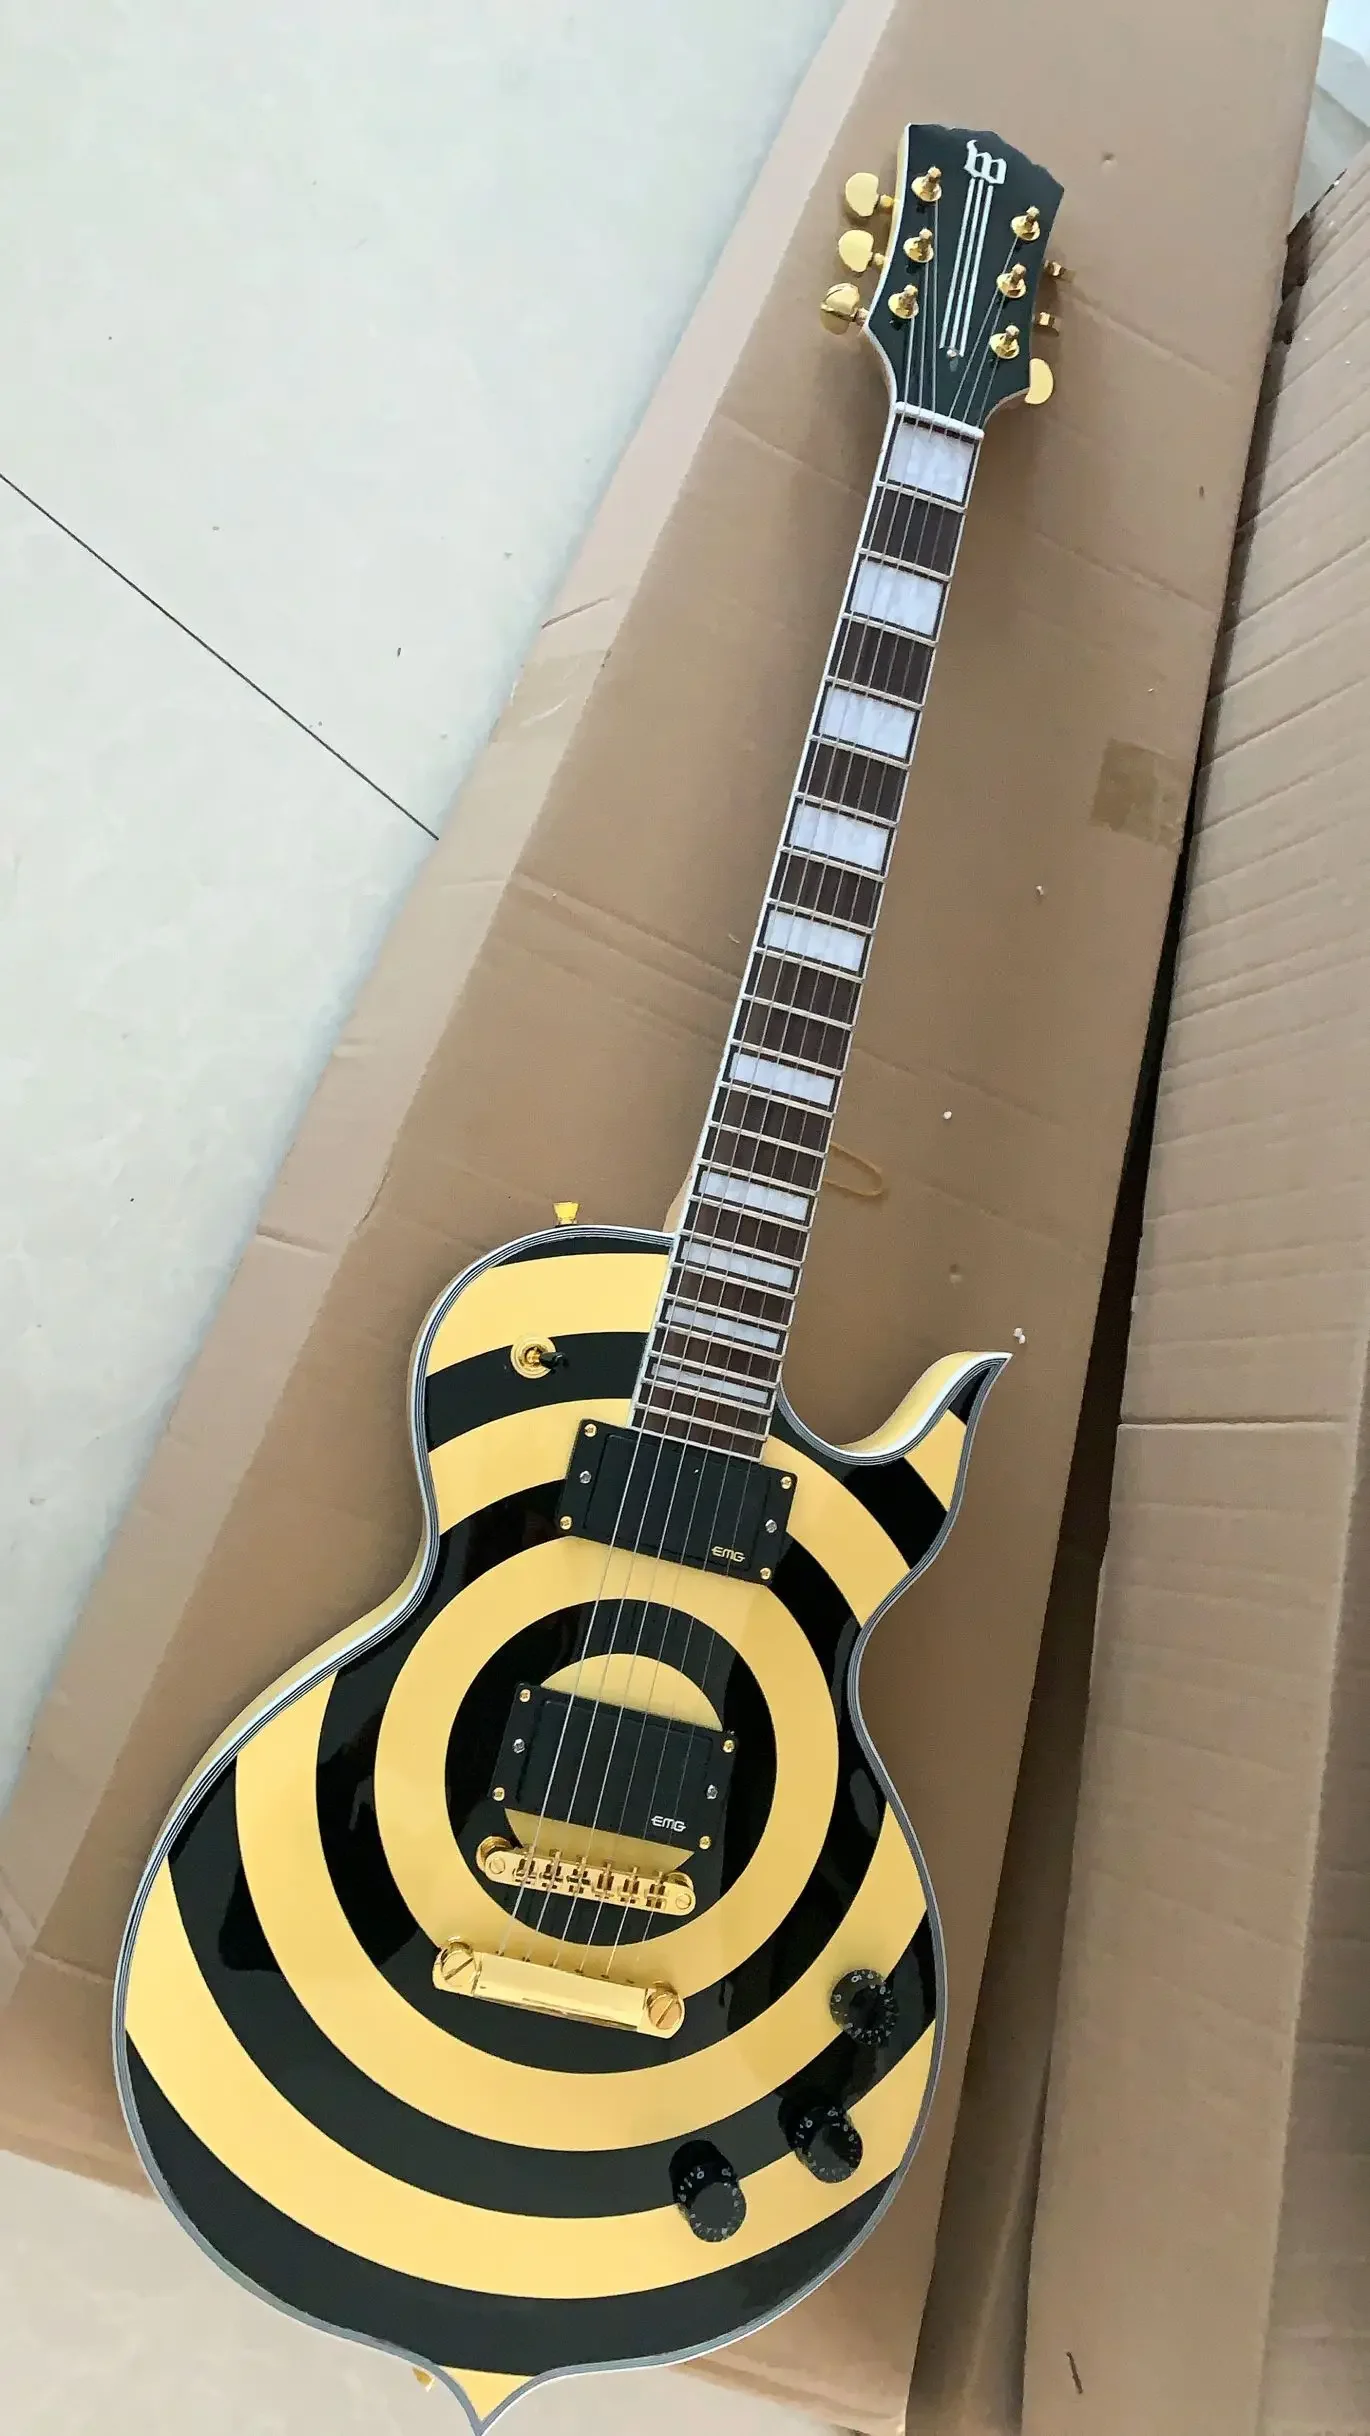 

Wylde аудио Odin Grail Gangrene желтый кремовый черный Bullseye электрическая гитара большая блочная инкрустация, золотая фурнитура, копия EMG Pickups